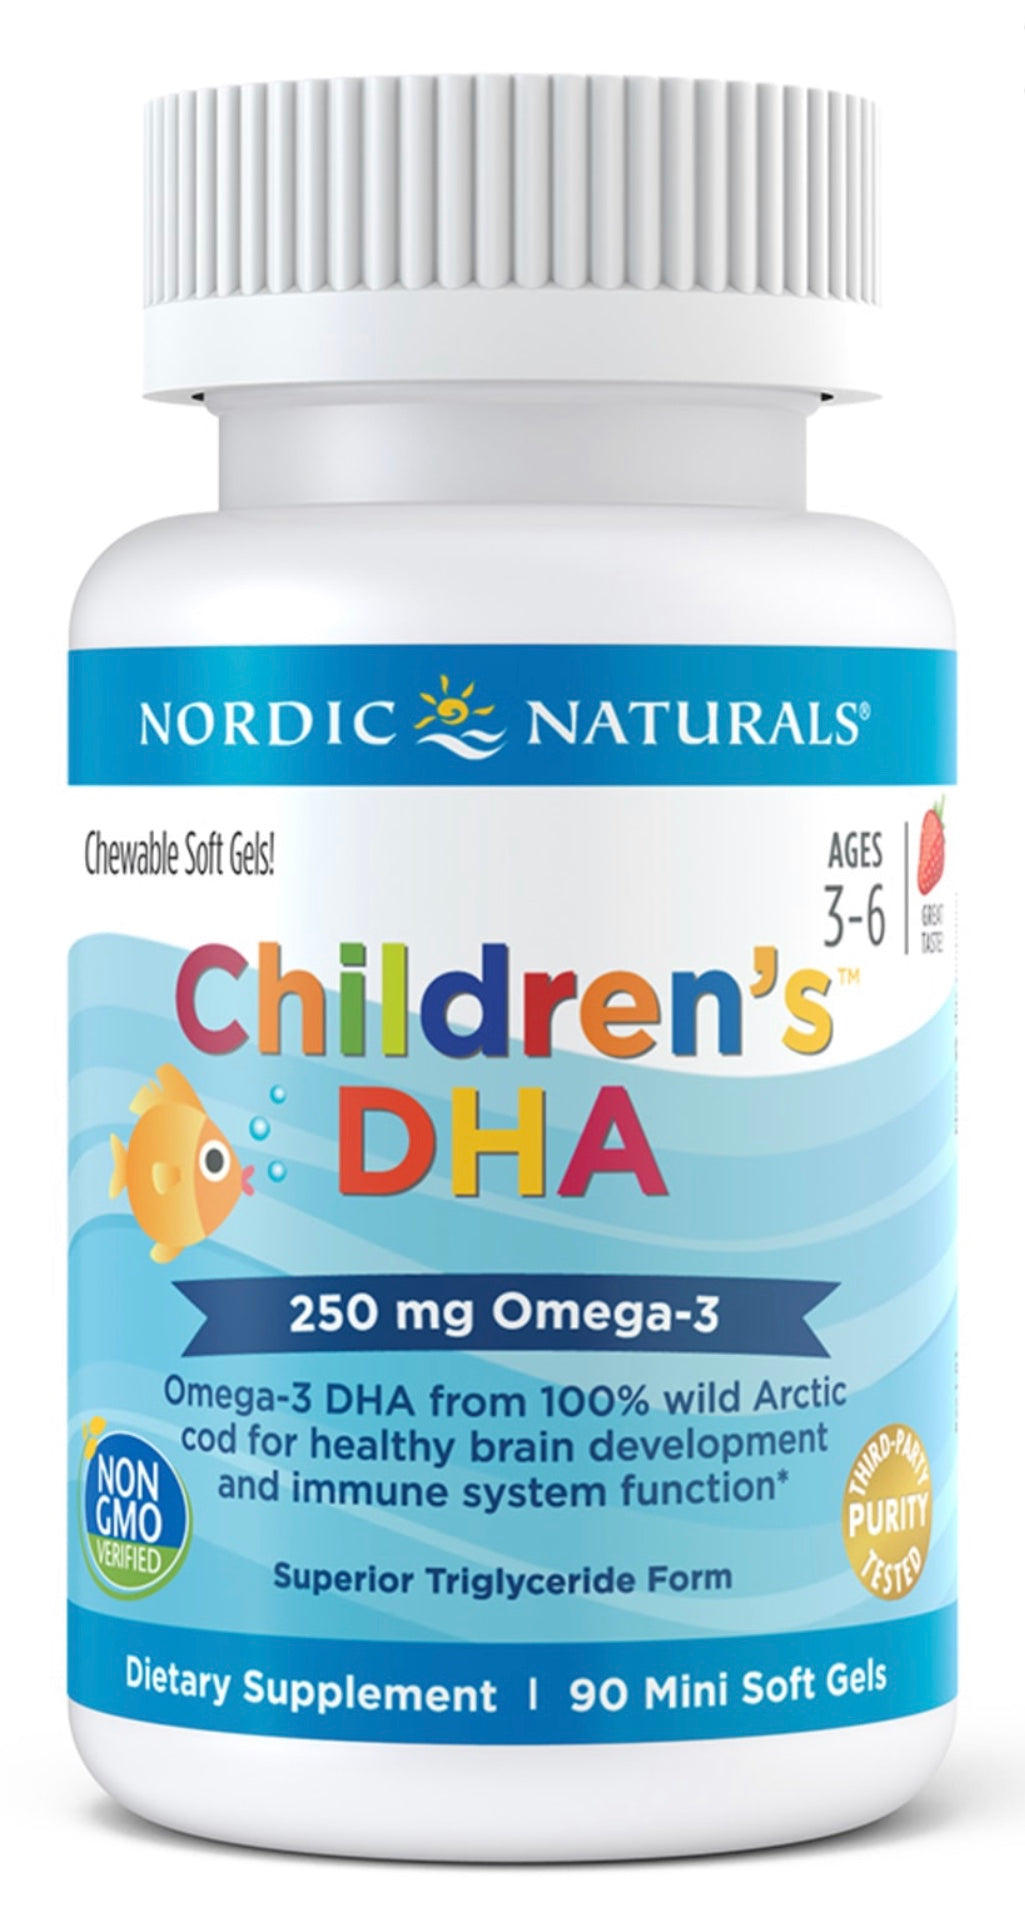 Nordic Naturals Children's DHA Capsules